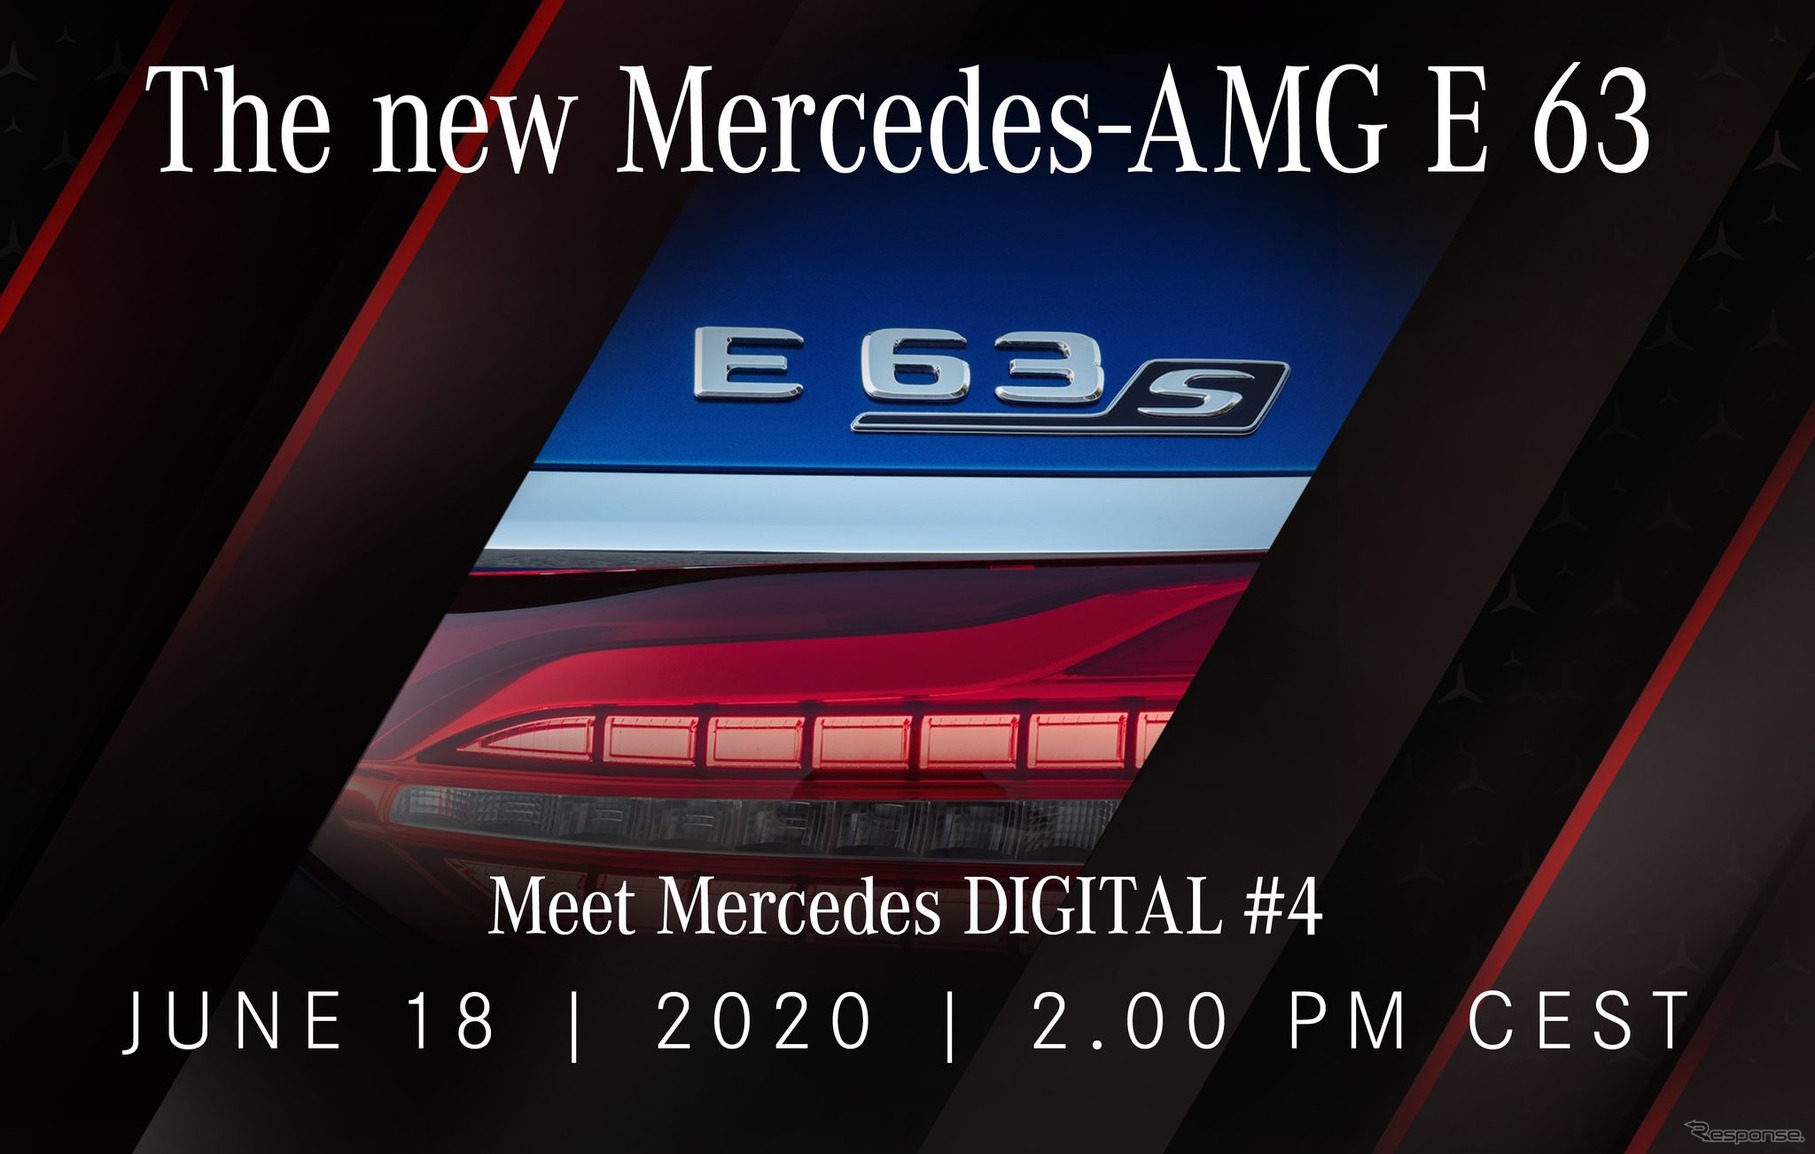 メルセデスAMG E63 S 4MATIC+ 改良新型のティザーイメージ